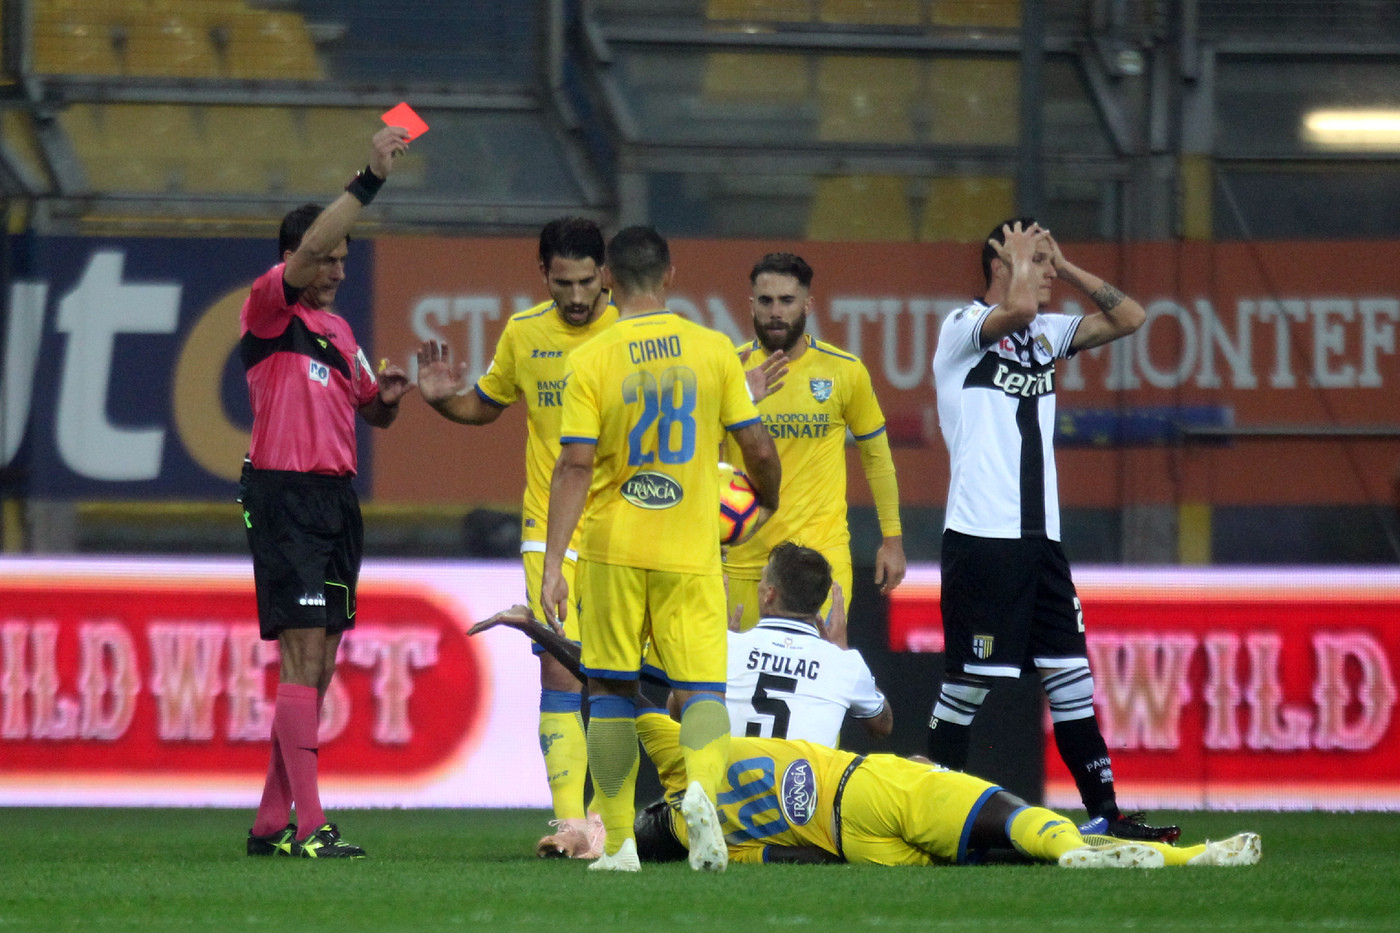 Serie A, follia Stulac ma Parma resiste: con Frosinone è 0-0